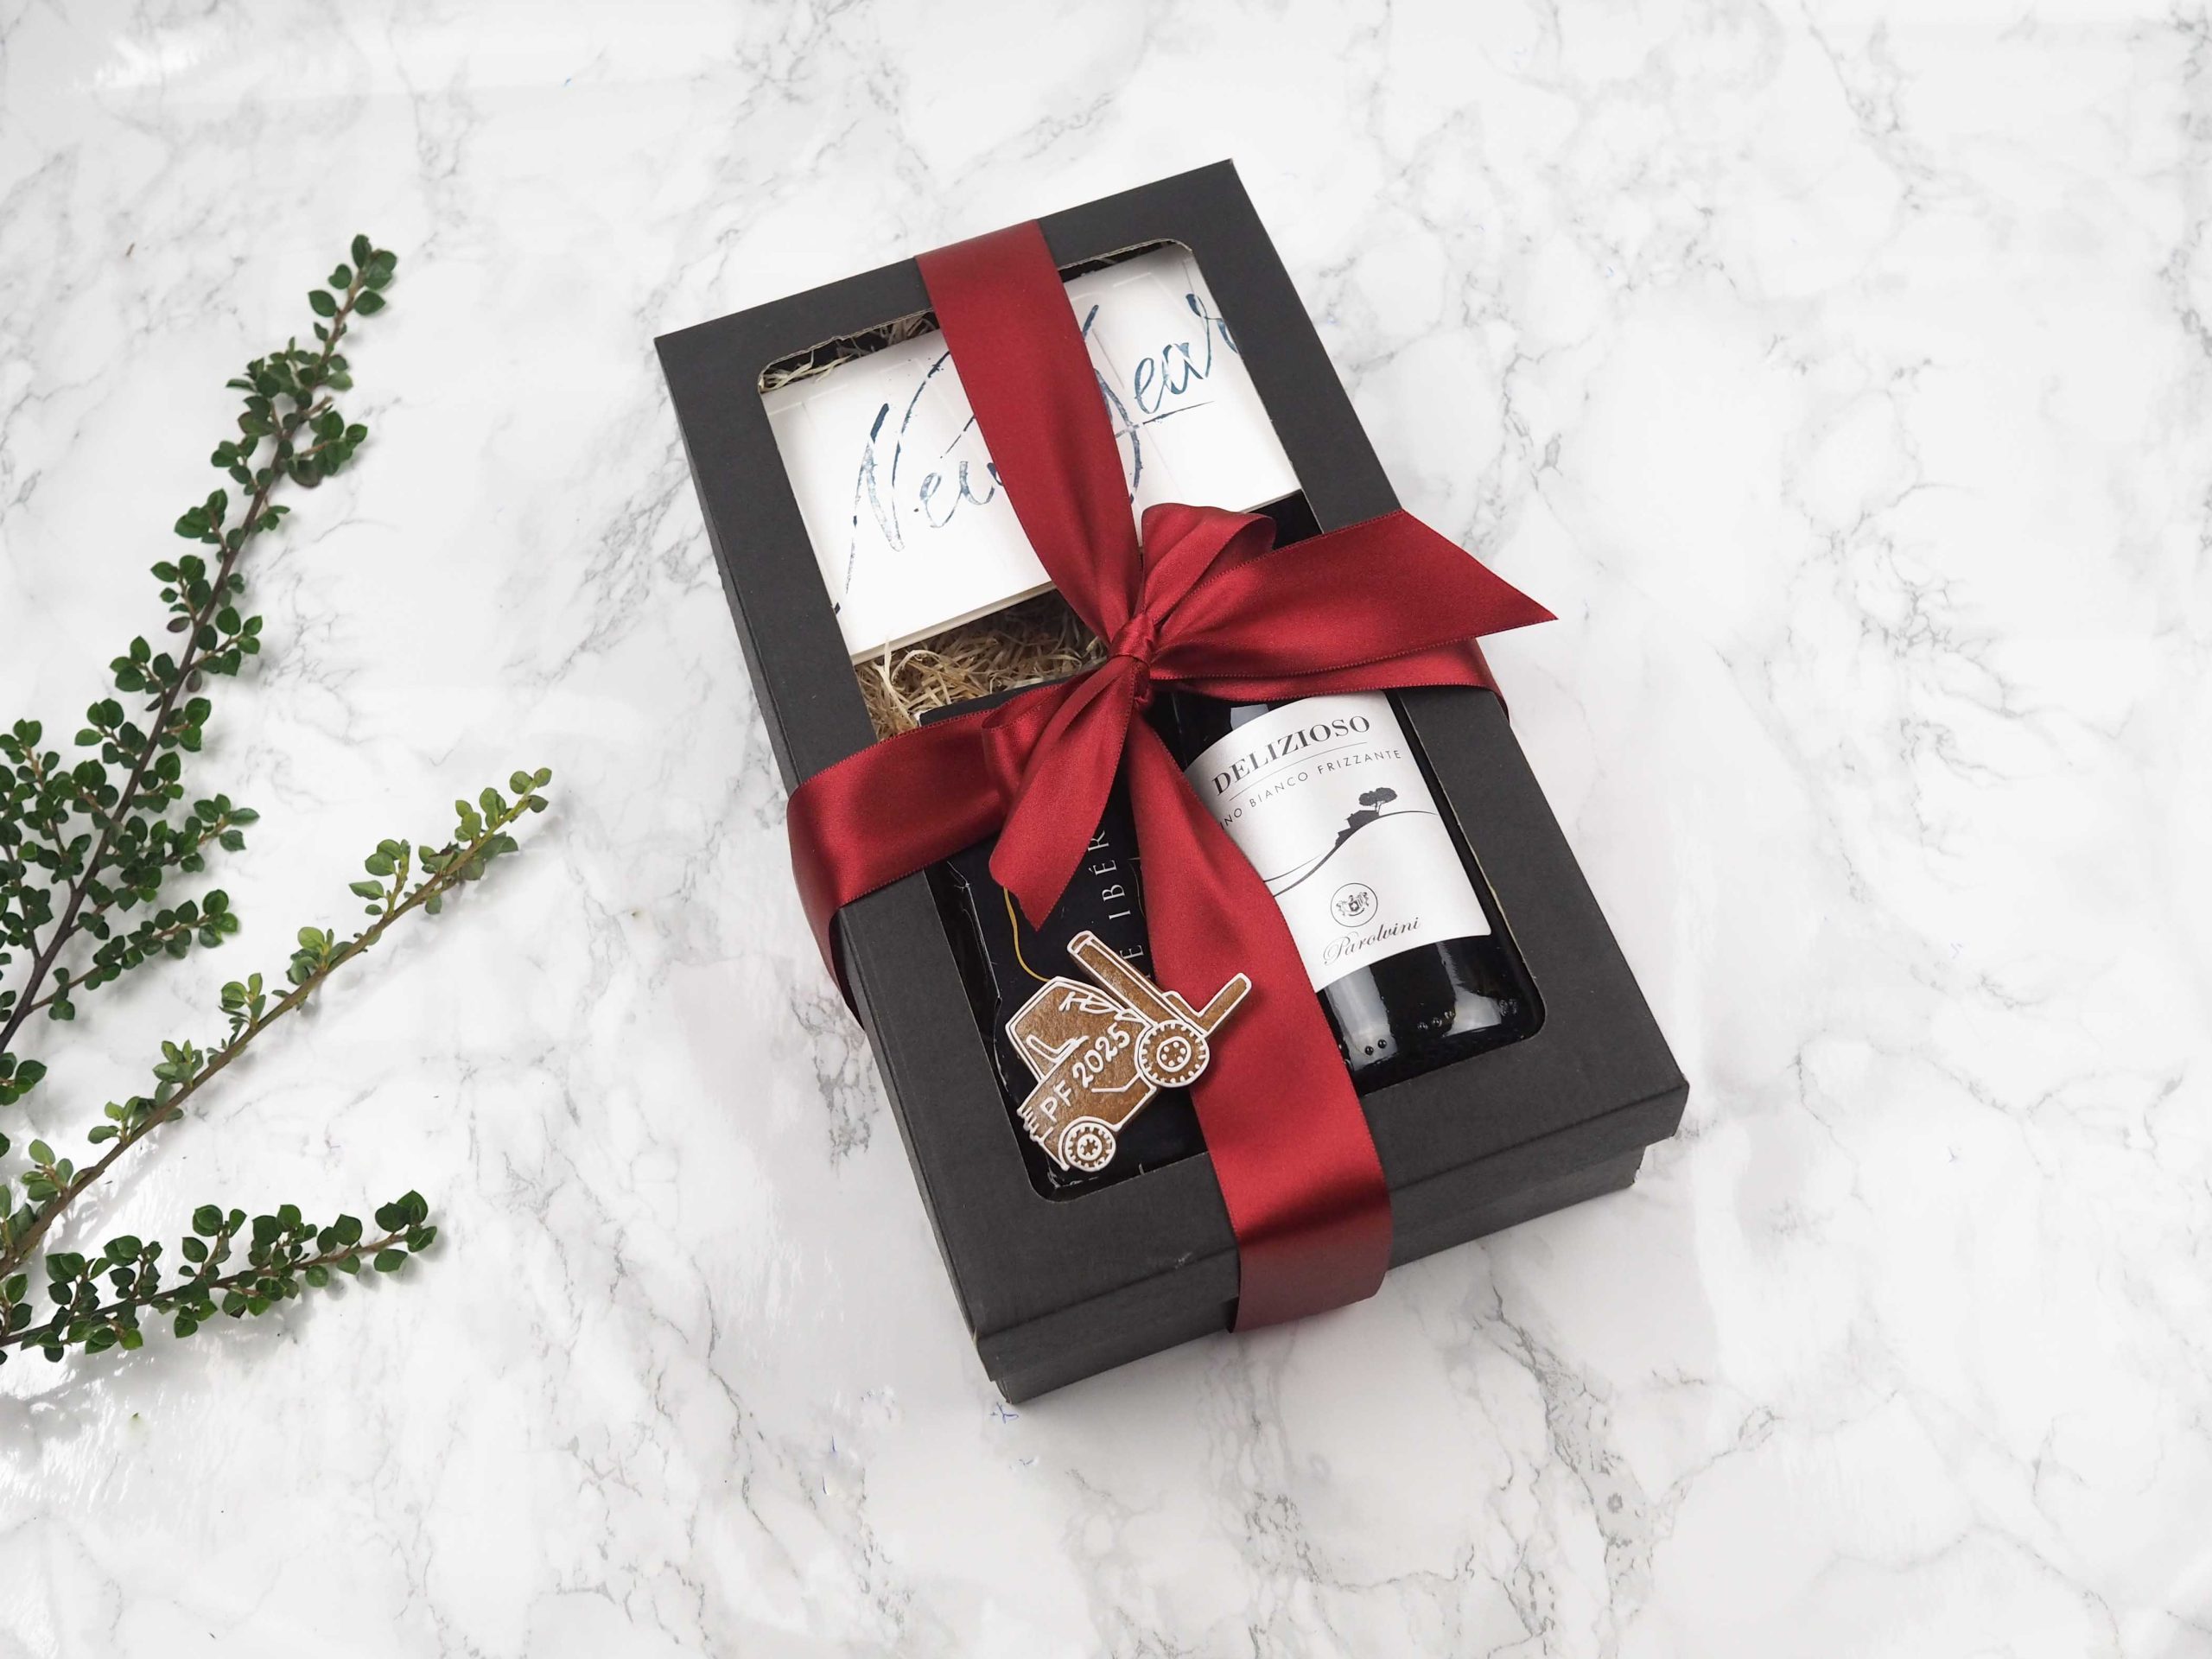 Dárkový balíček New Year v sobě obsahuje medový perníček ve tvaru vysokozdvihu, PF přání, červeného vína a vepřového paté Ibérico.